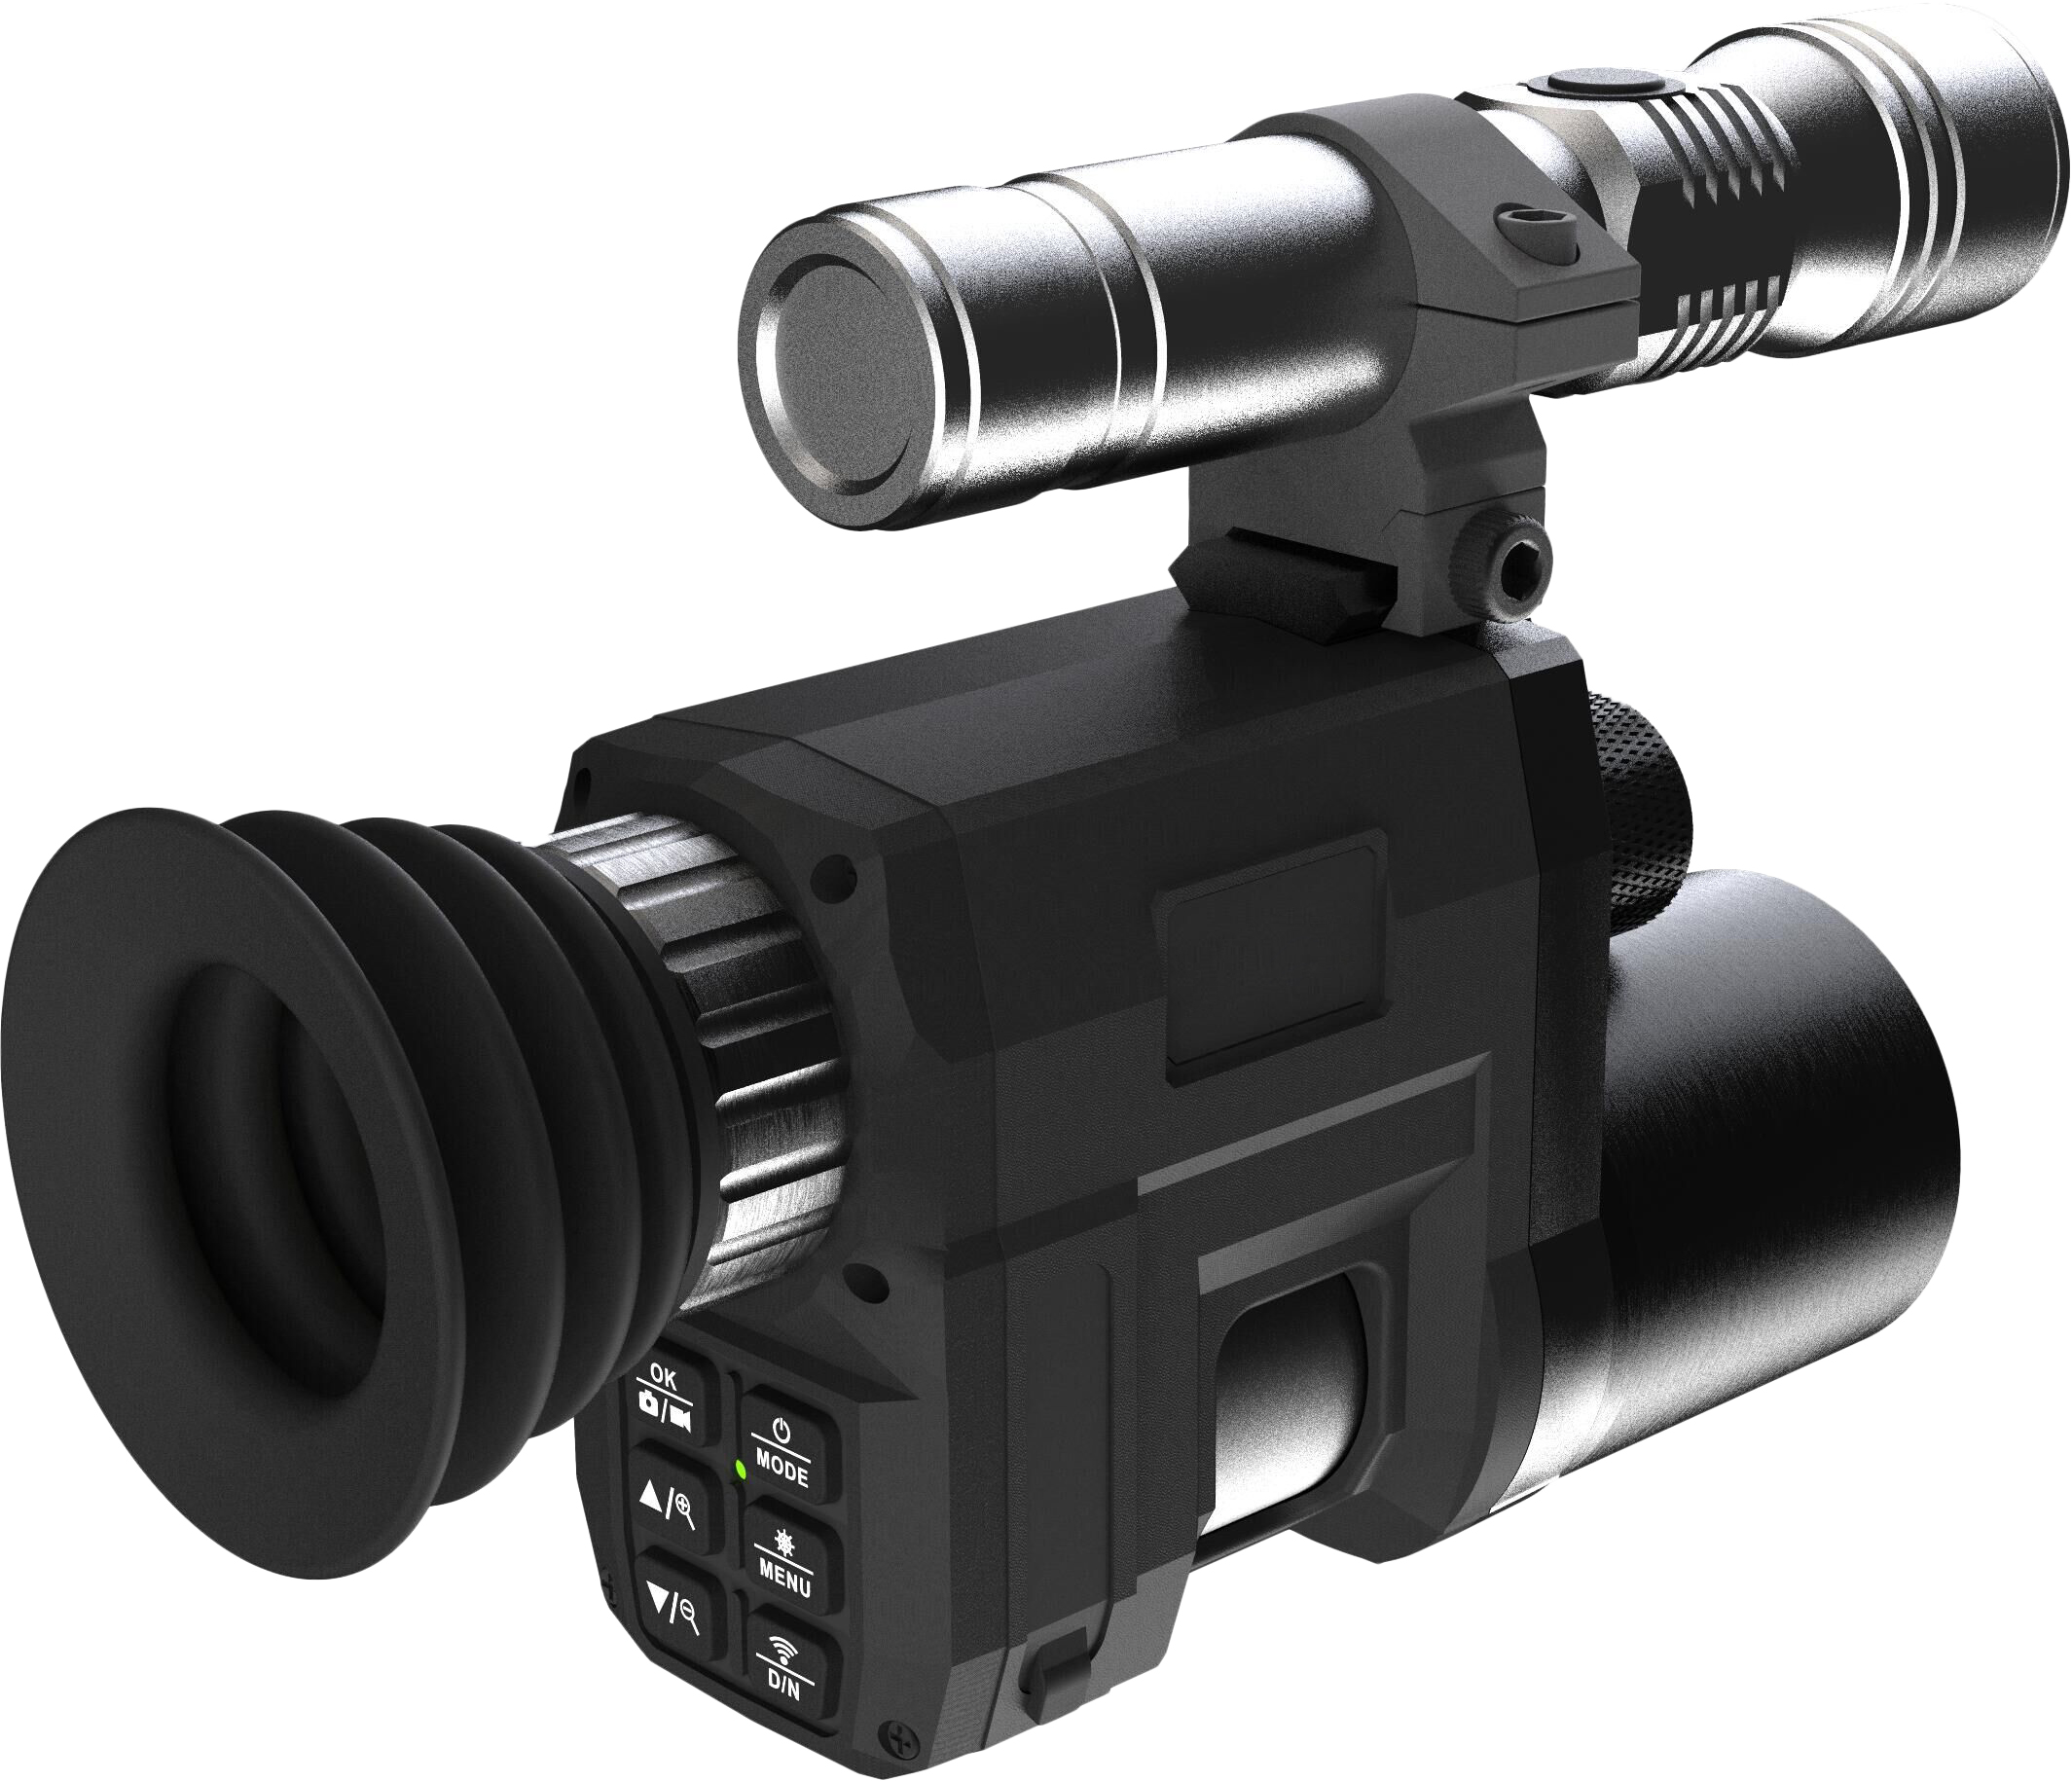 Монокуляр SUNTEK Night Vision Riflescope NV3000 монокуляр ночного видения suntek nv 650 night vision monocular